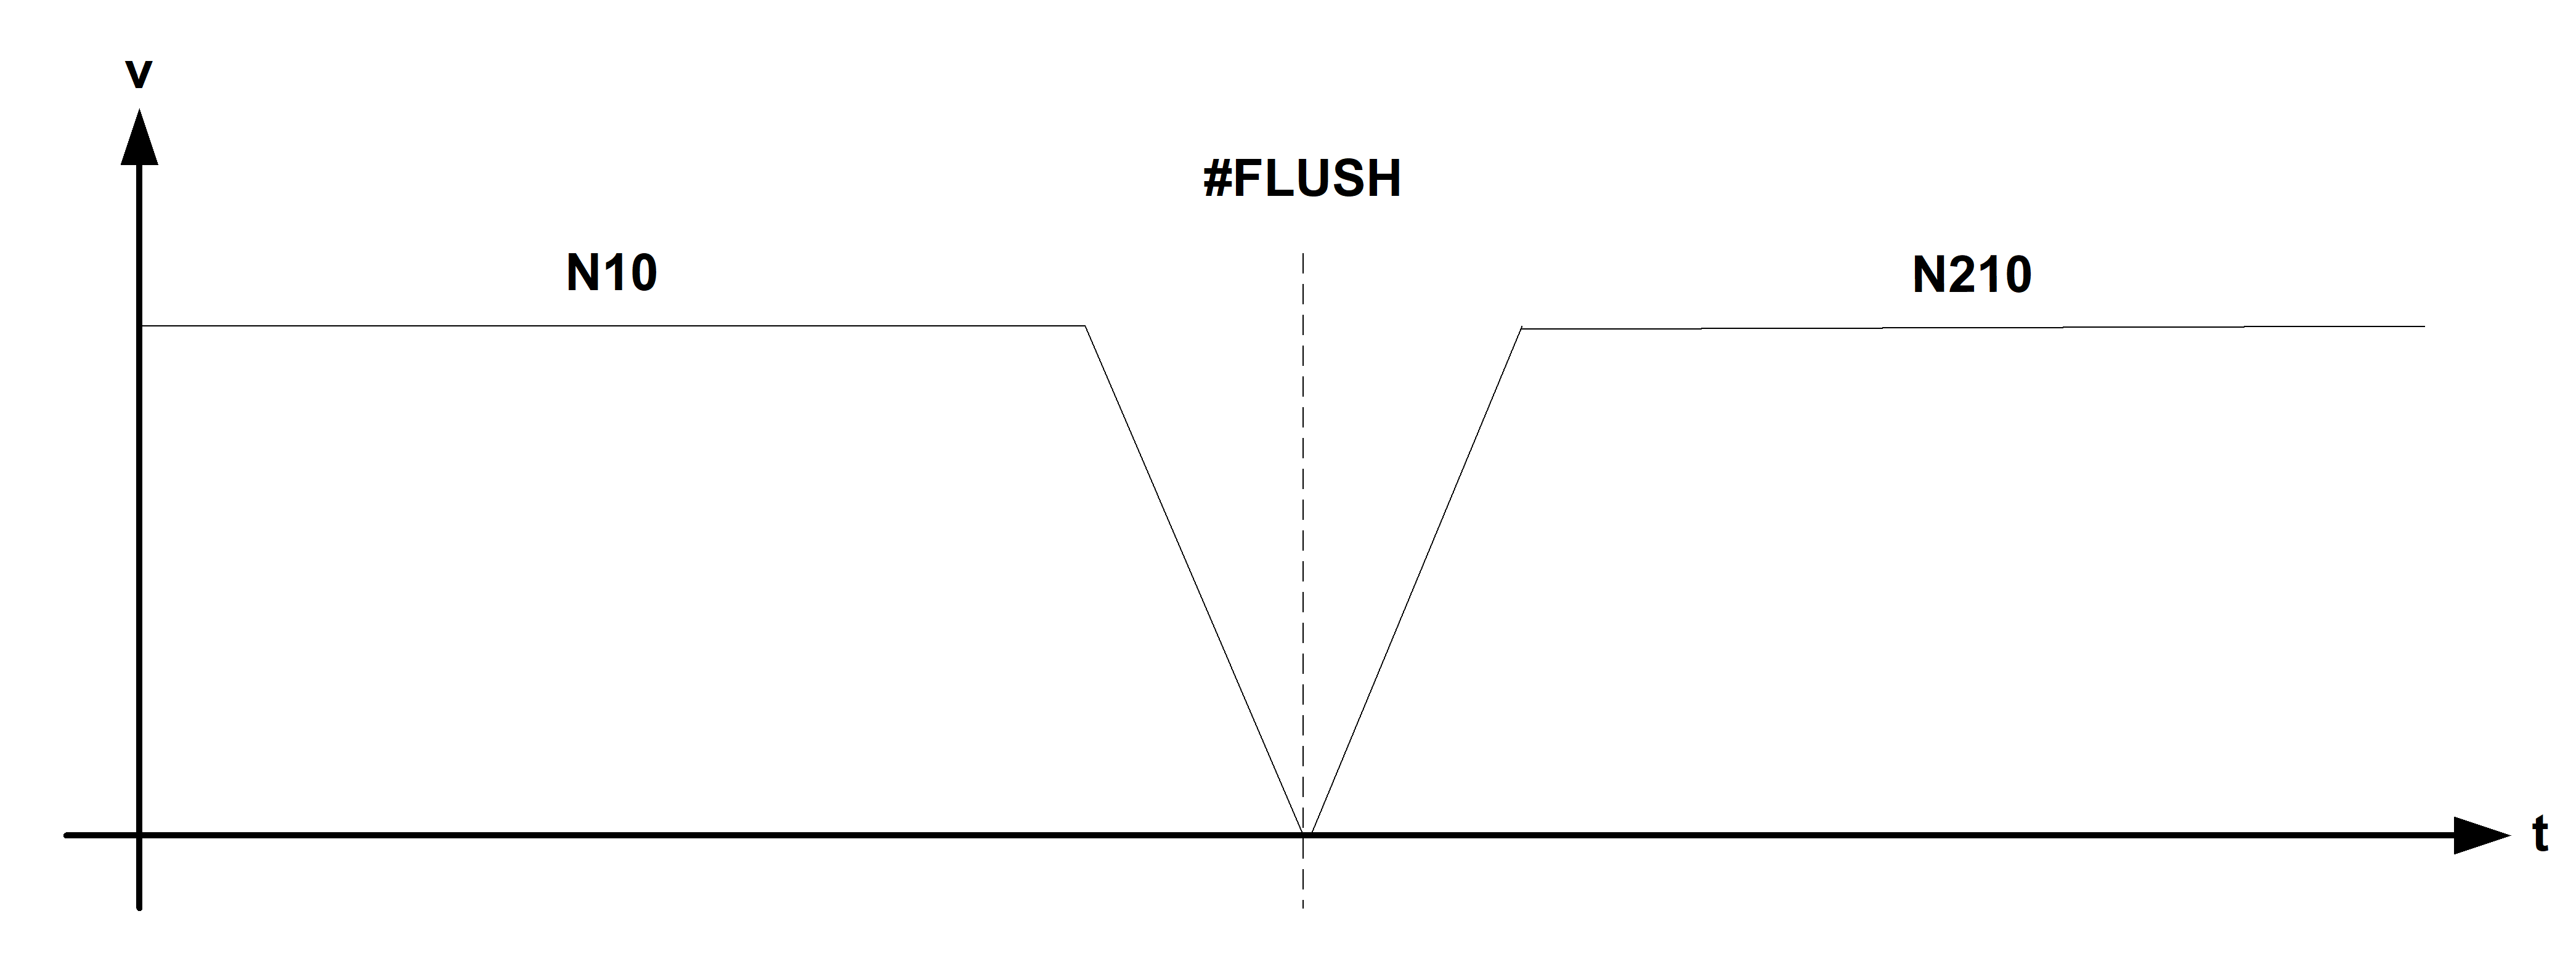 Wirkungsweise #FLUSH zwischen 2 Verfahrsätzen